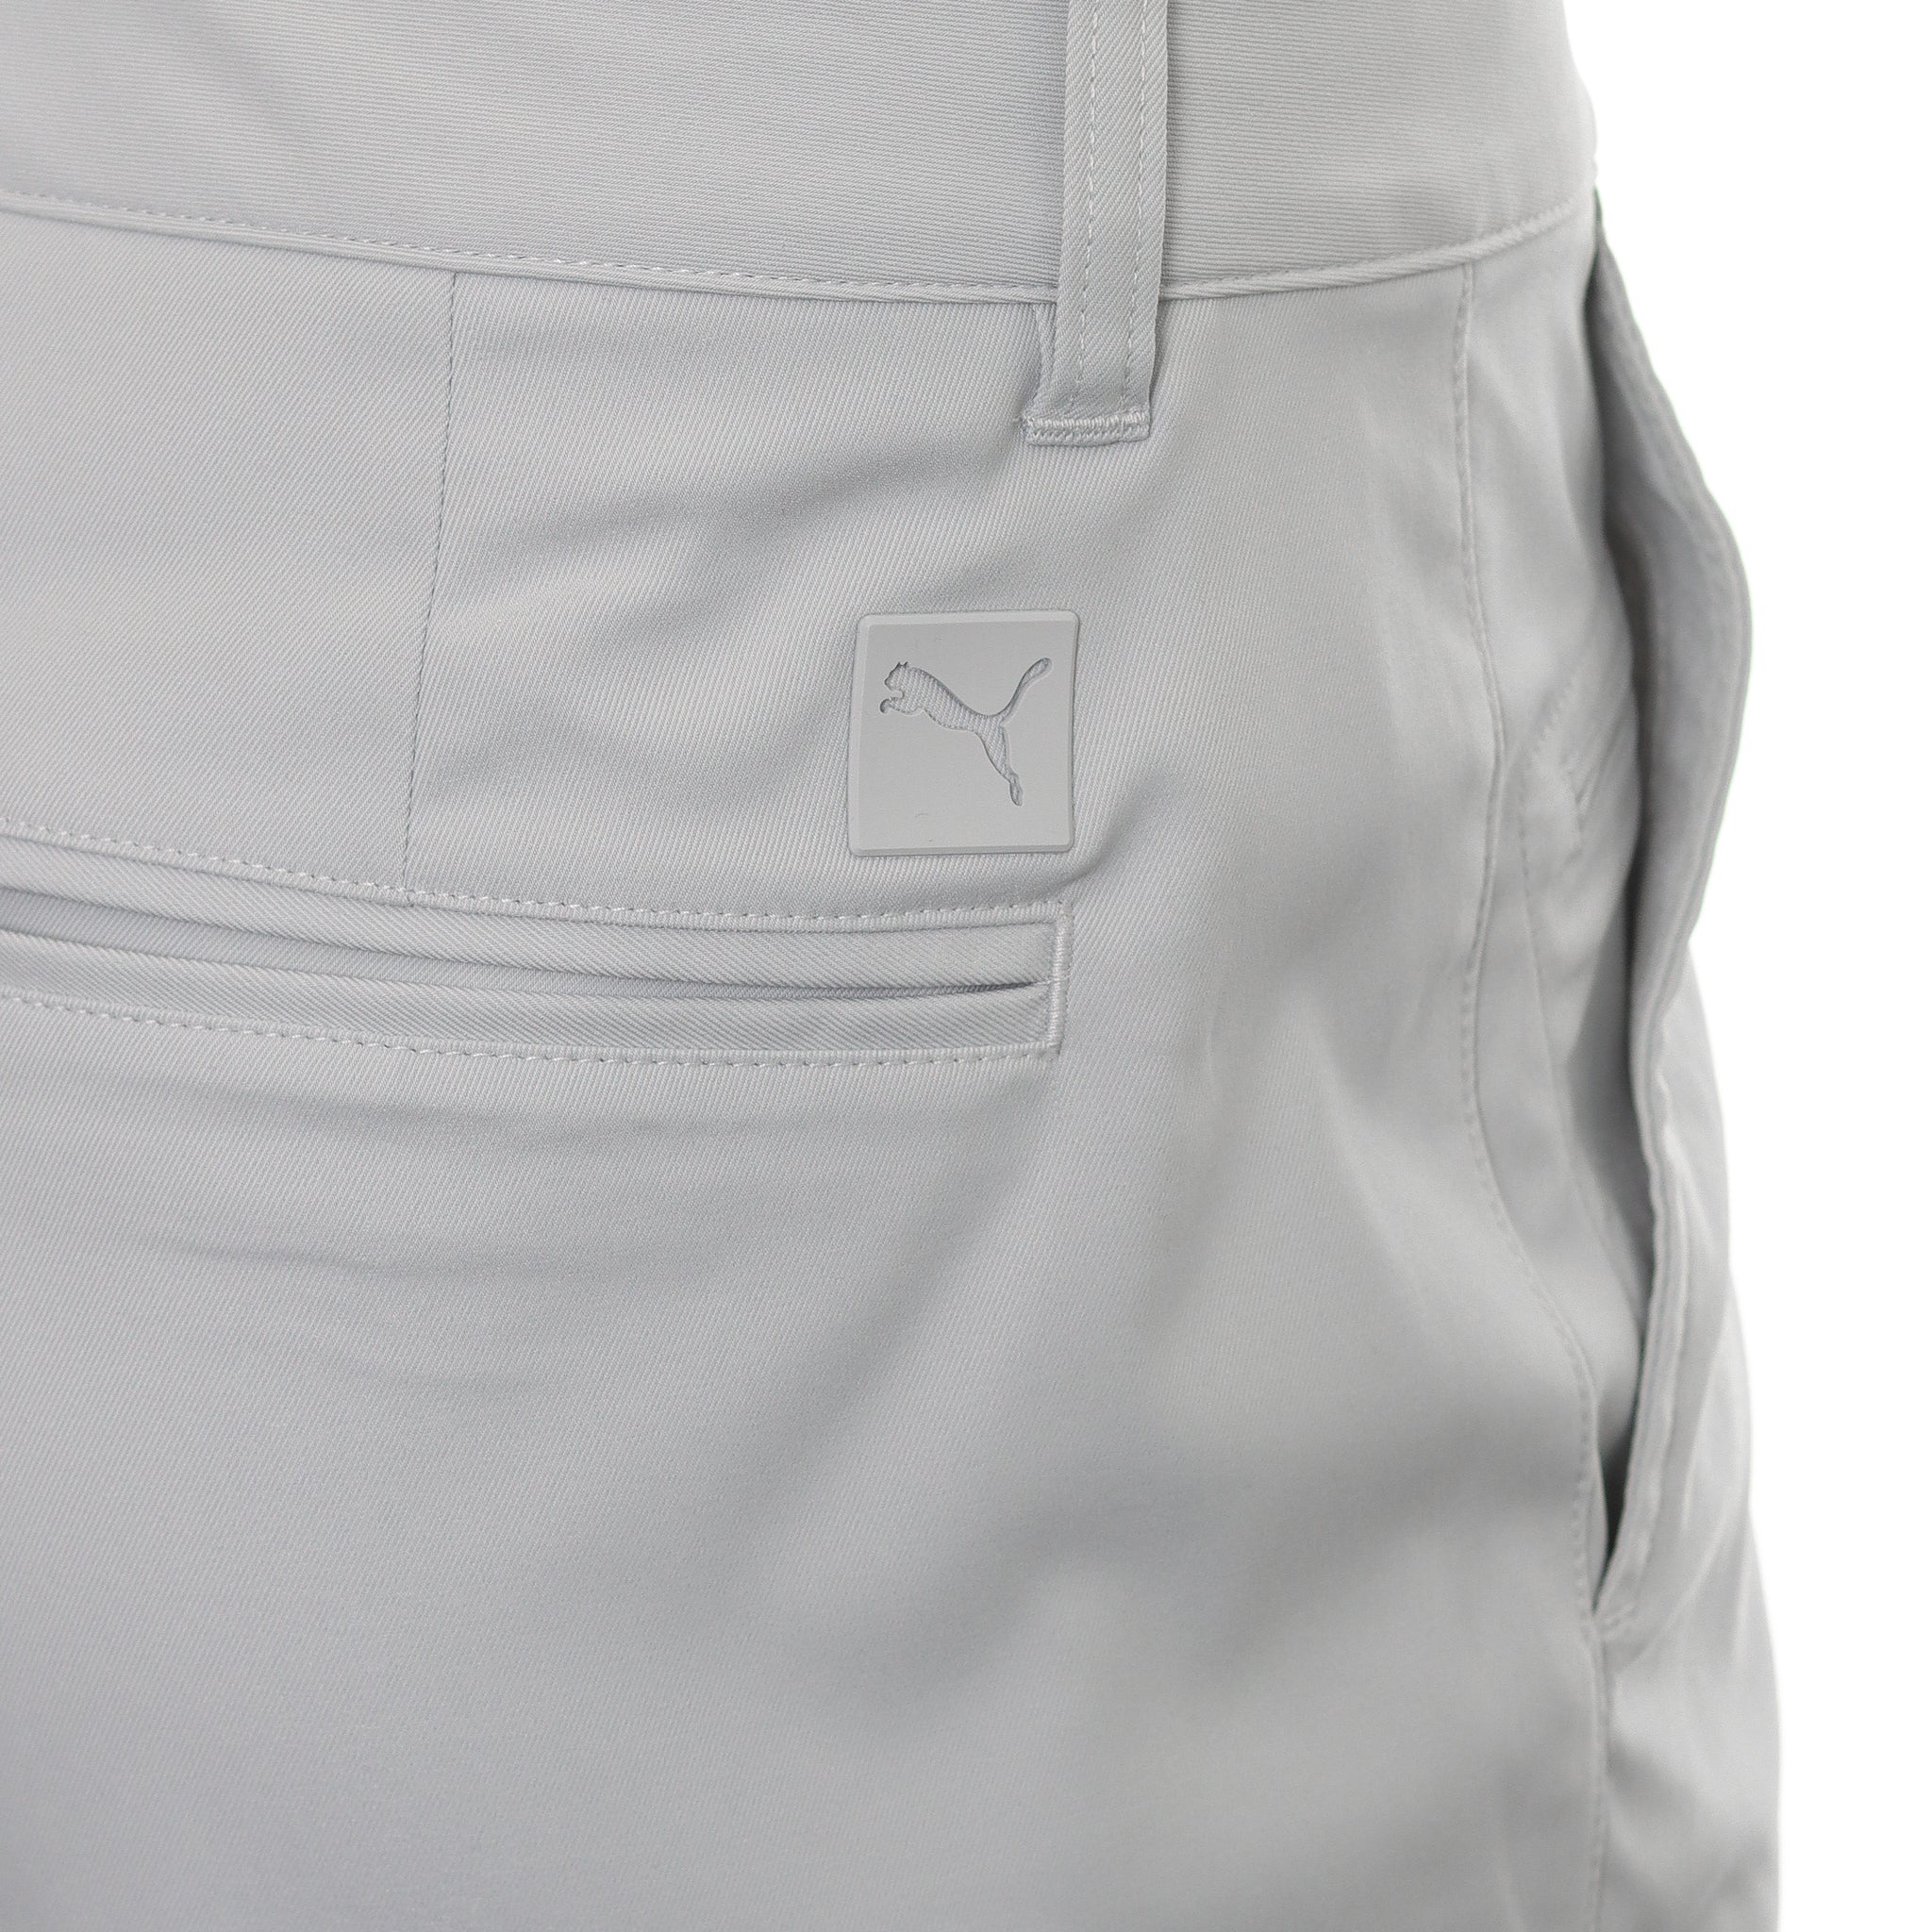 puma-golf-dealer-tailored-8-shorts-620271-ash-grey-04